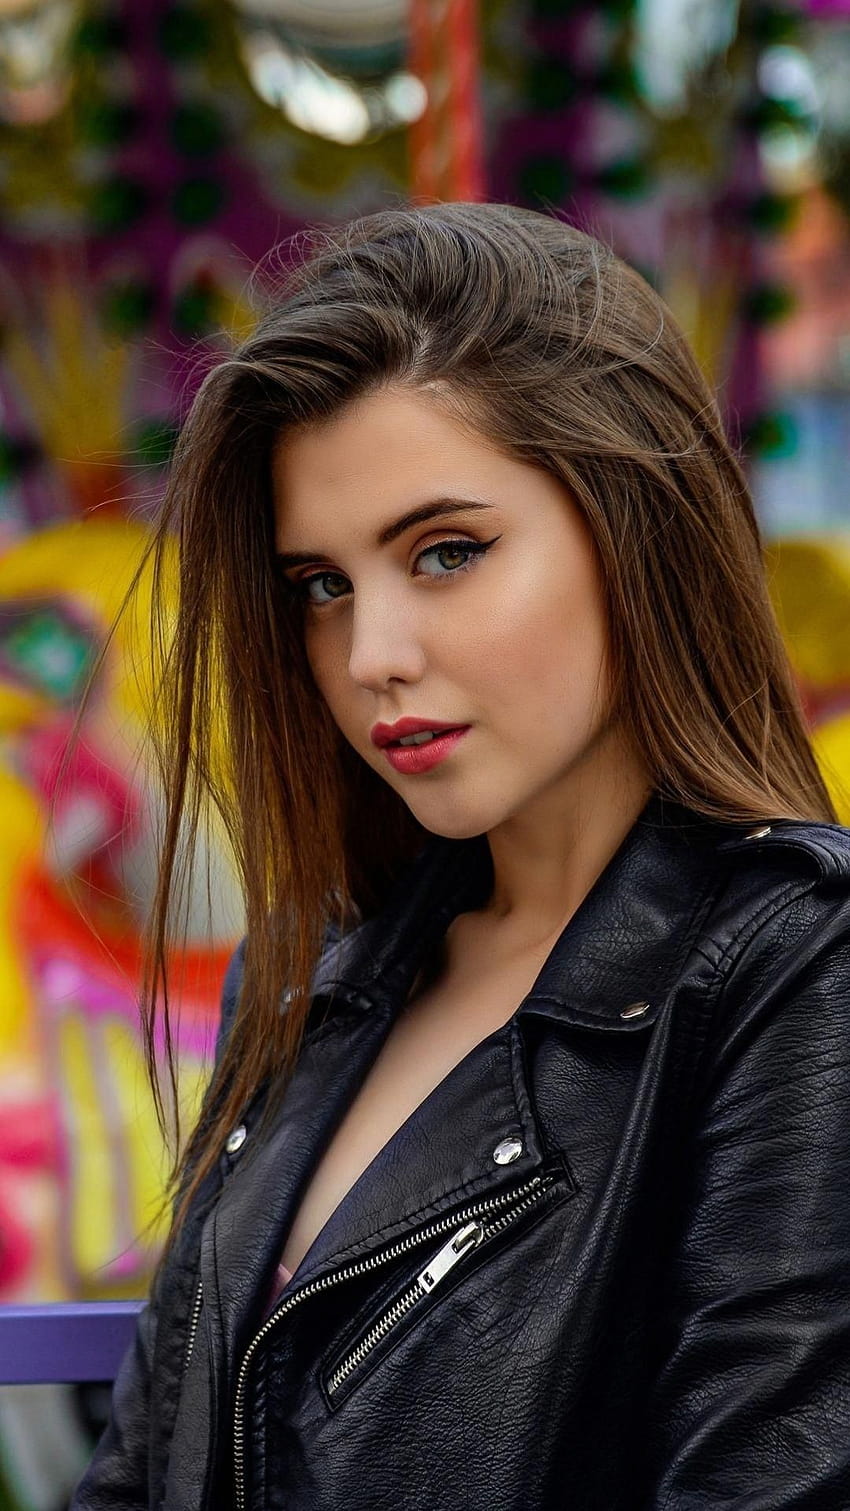 BEAUTY GIRL, leather biker jacket HD phone wallpaper